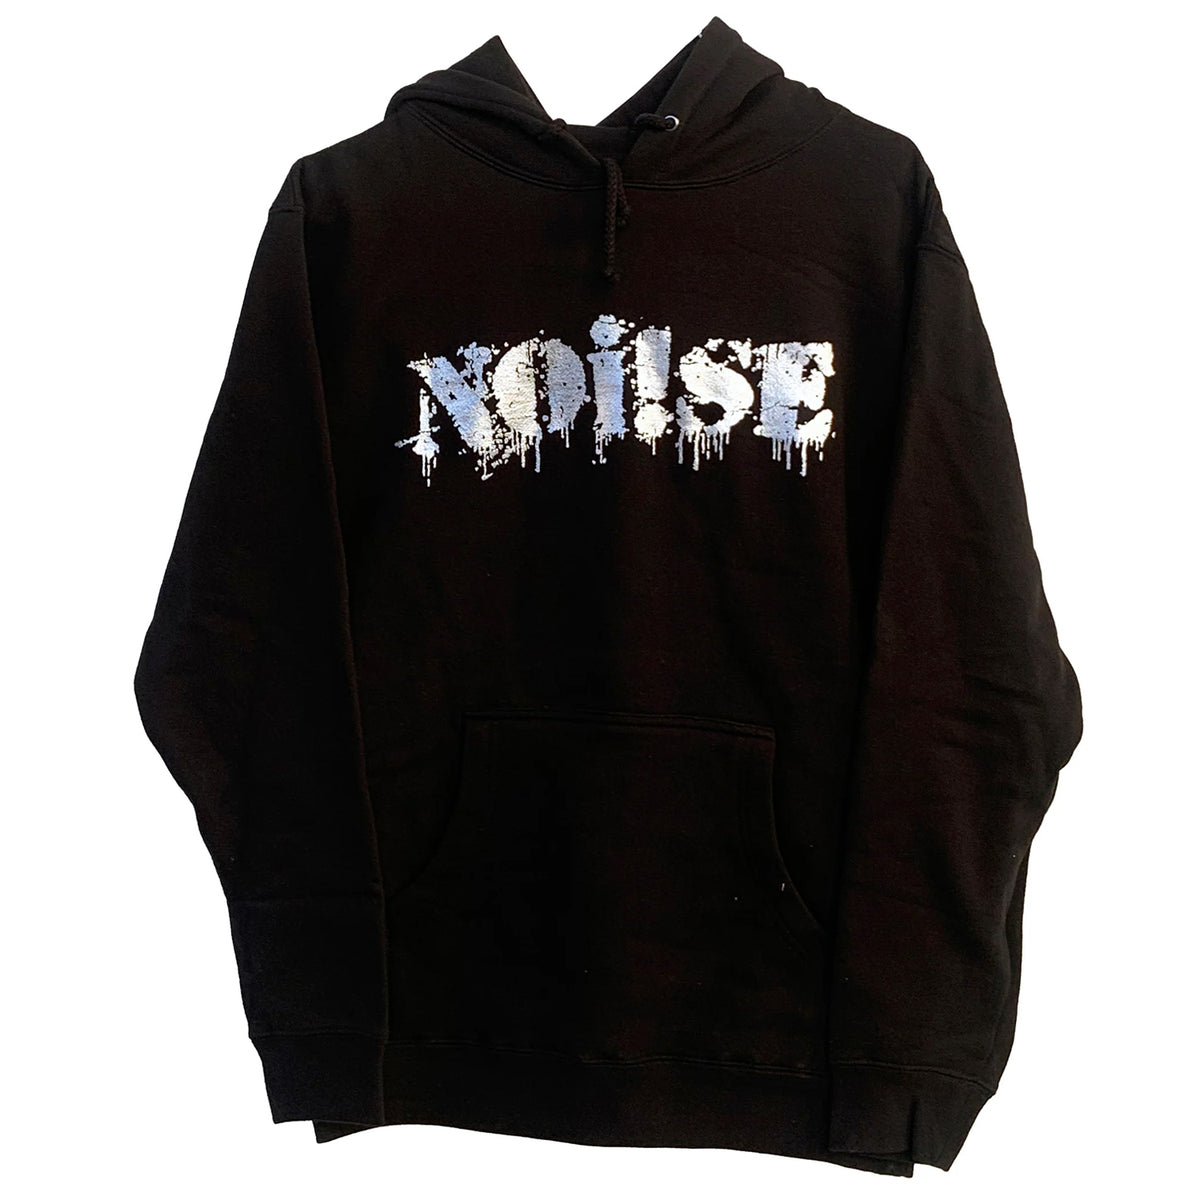 NOi!SE - Logo - Silver On Black - Hooded Sweatshirt